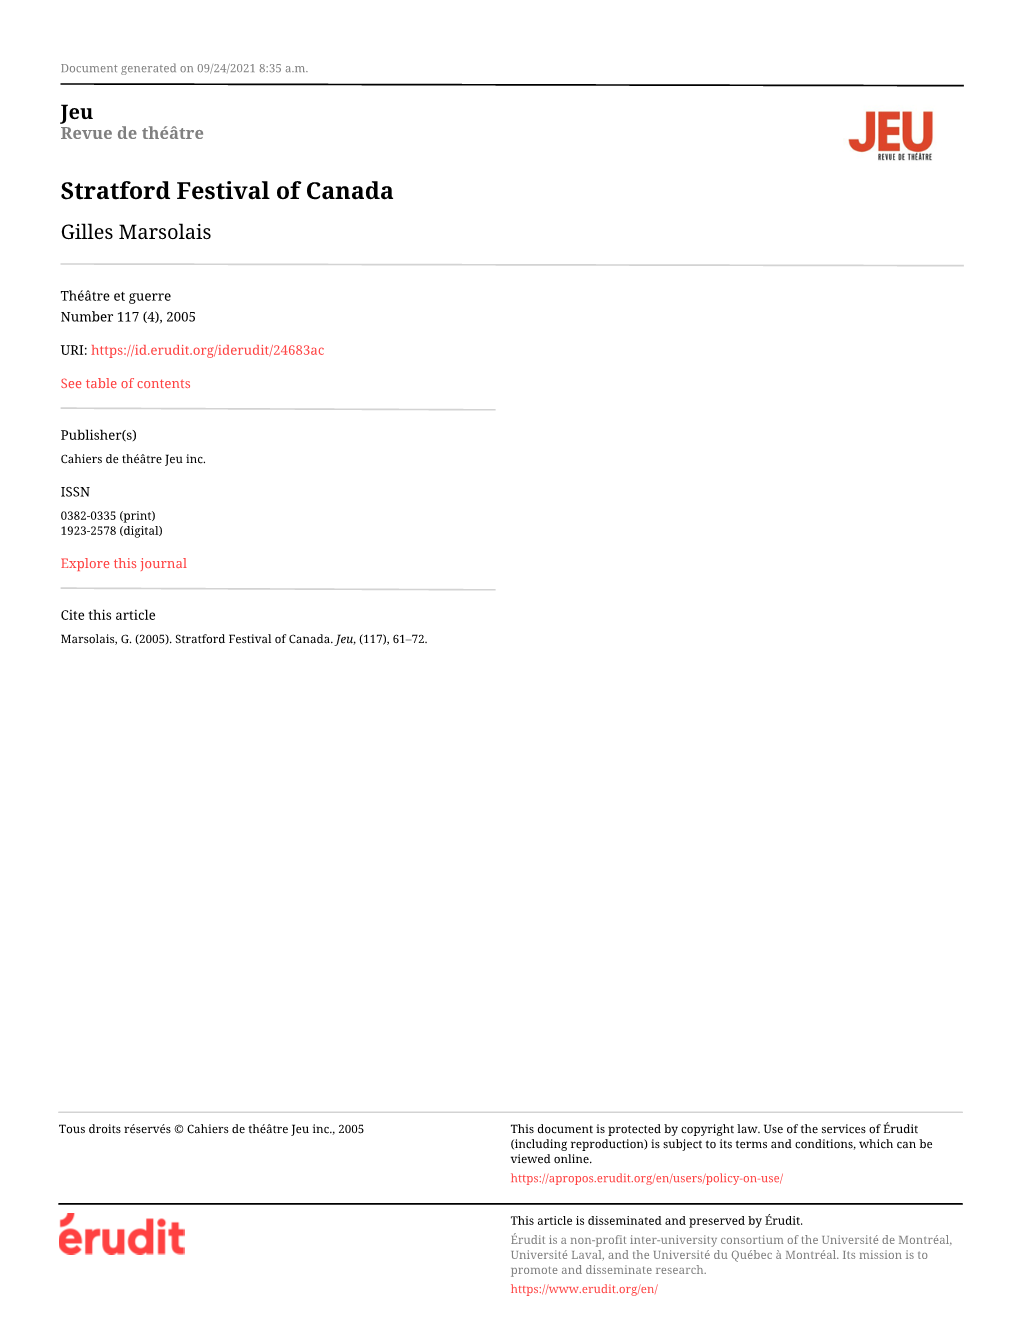 Stratford Festival of Canada Gilles Marsolais